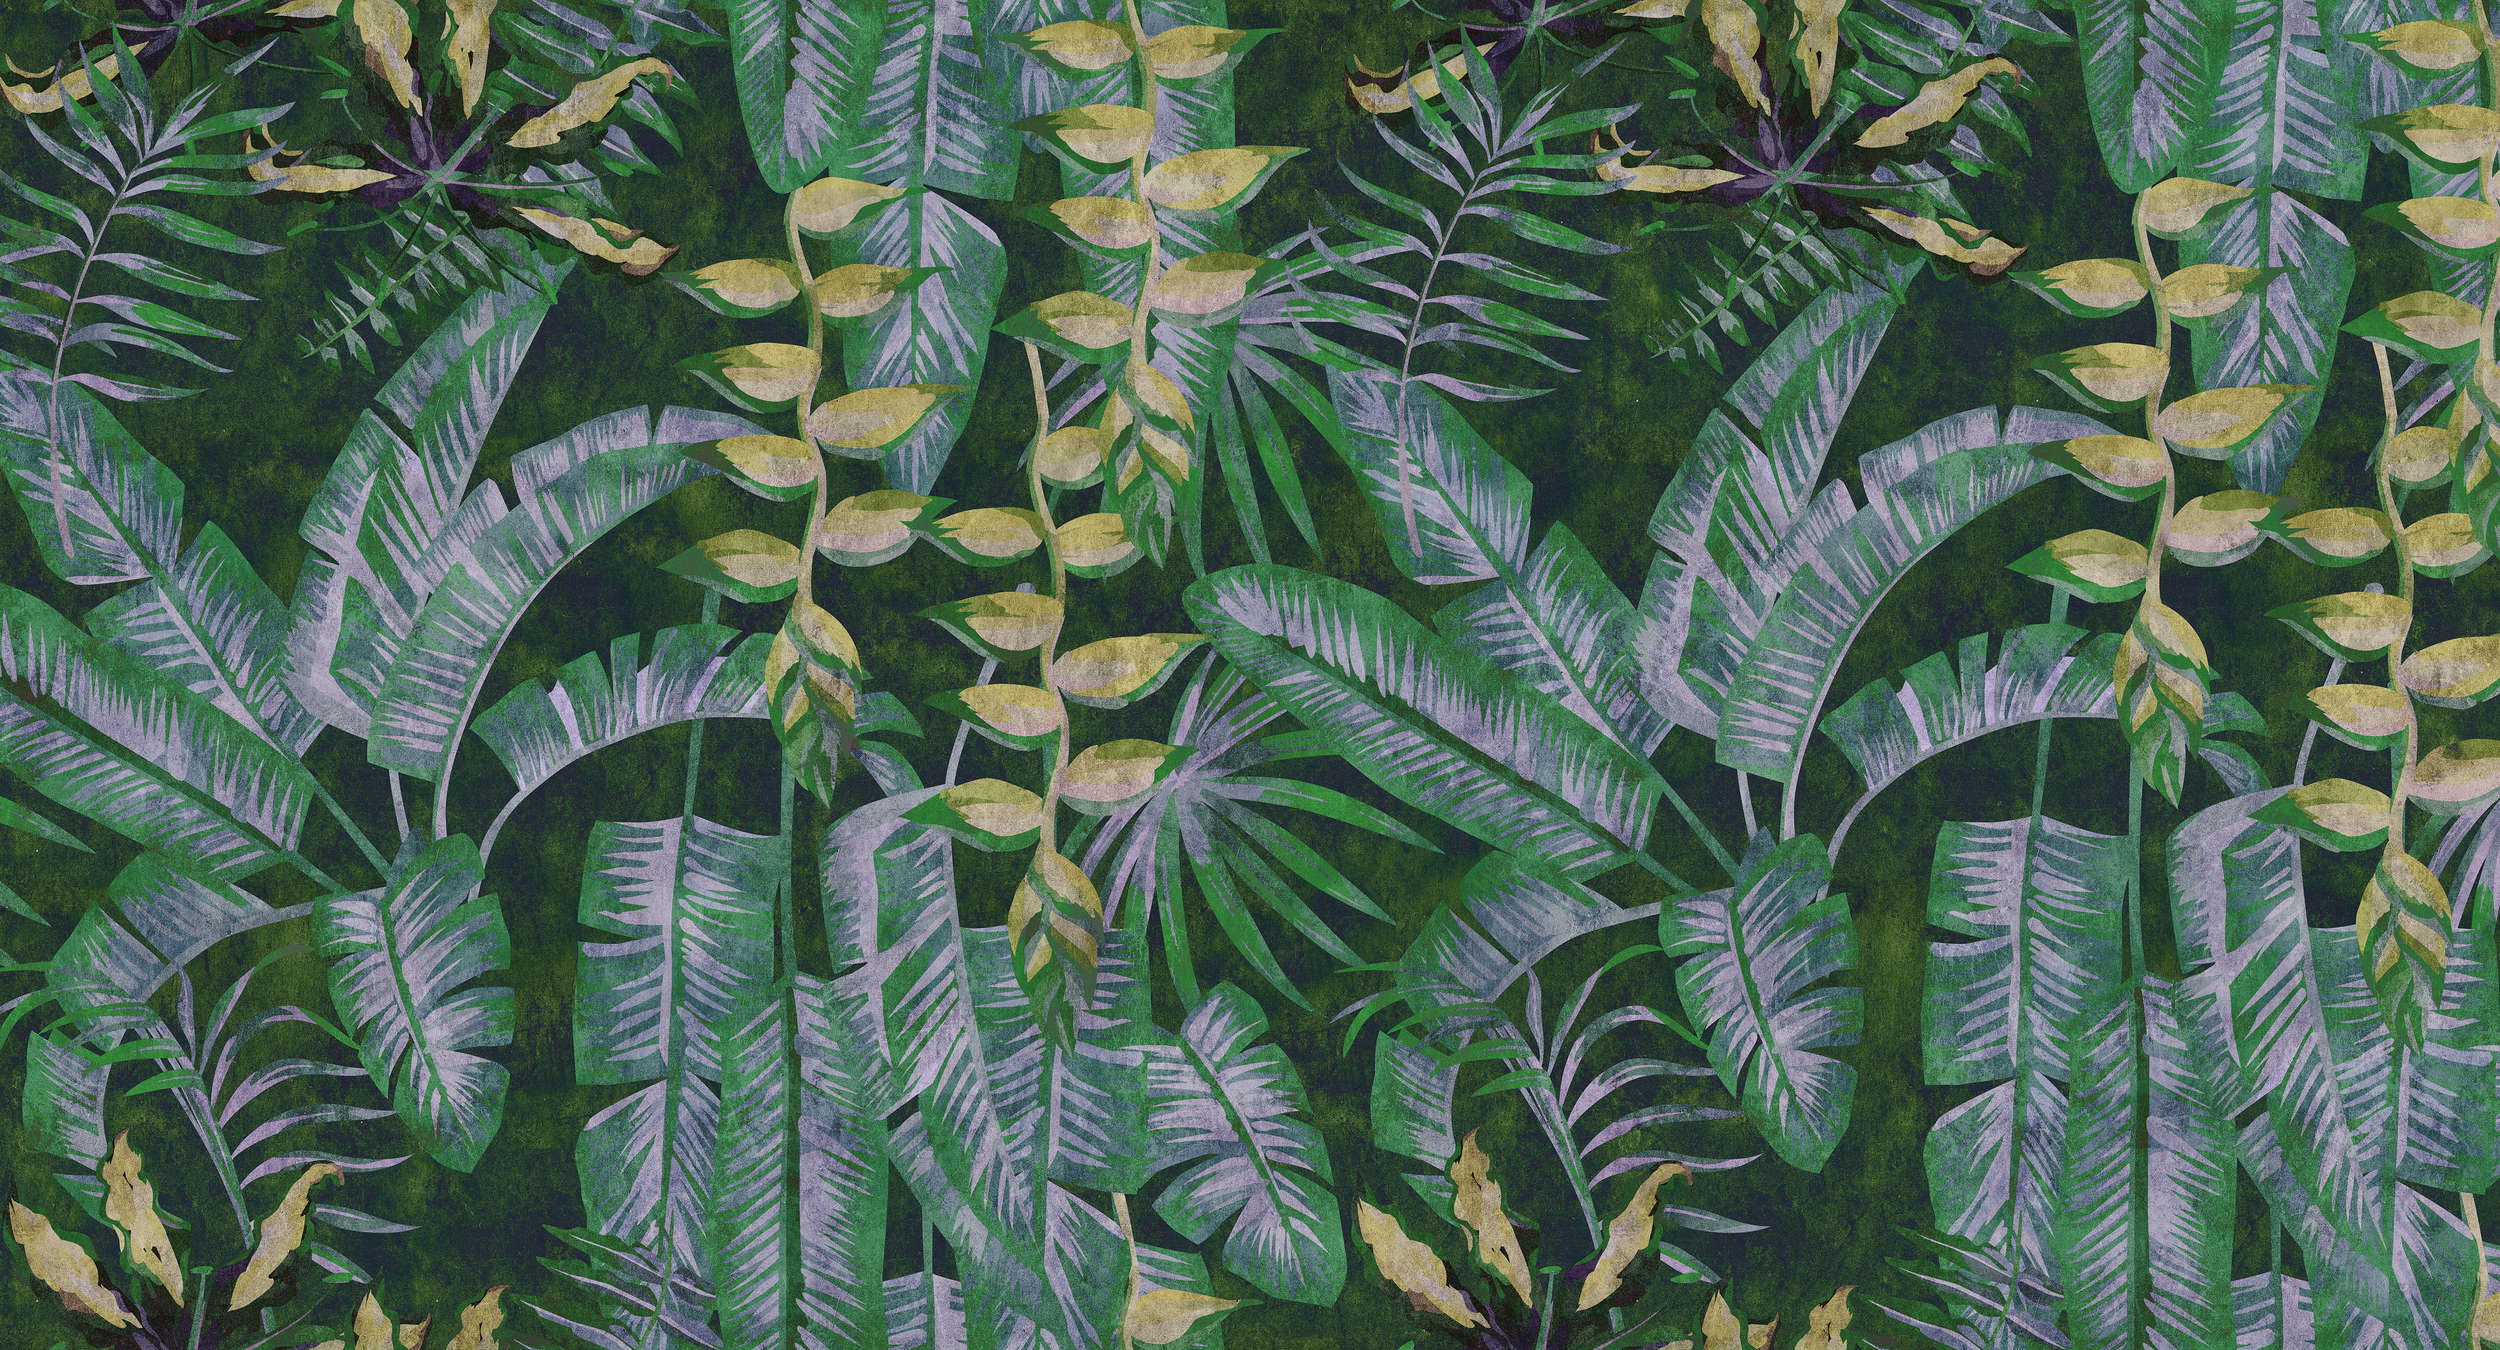             Tropicana 2 - digitaal printbehang met tropische planten in vloeipapierstructuur - geel, groen | parelmoer glad vlies
        